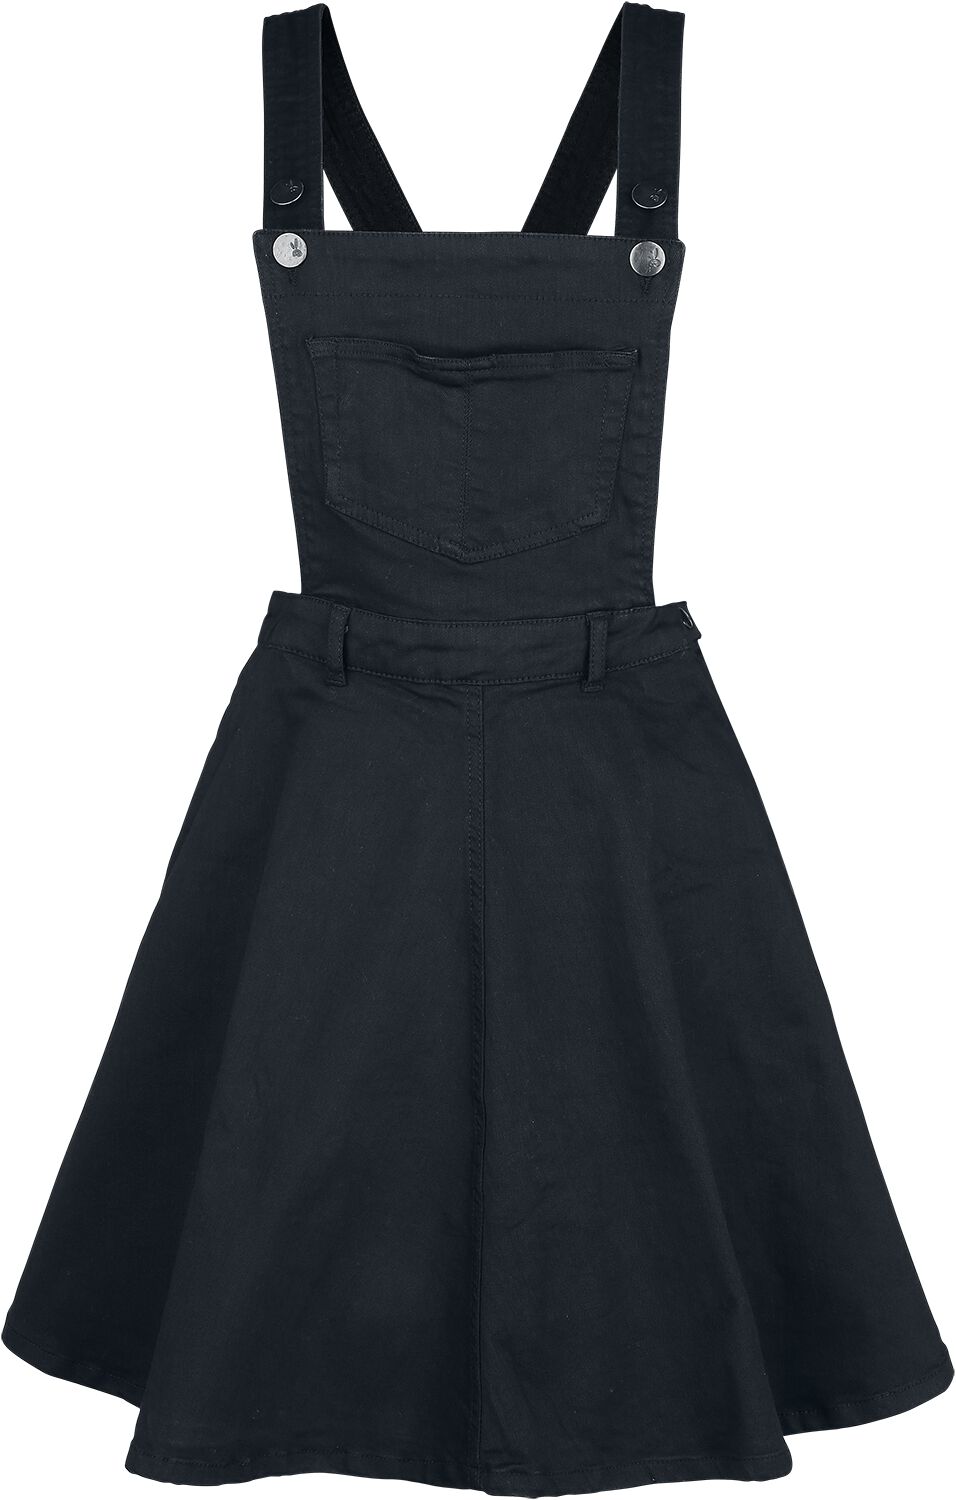 Dakota Pinafore Dress Mittellanges Kleid schwarz von Hell Bunny